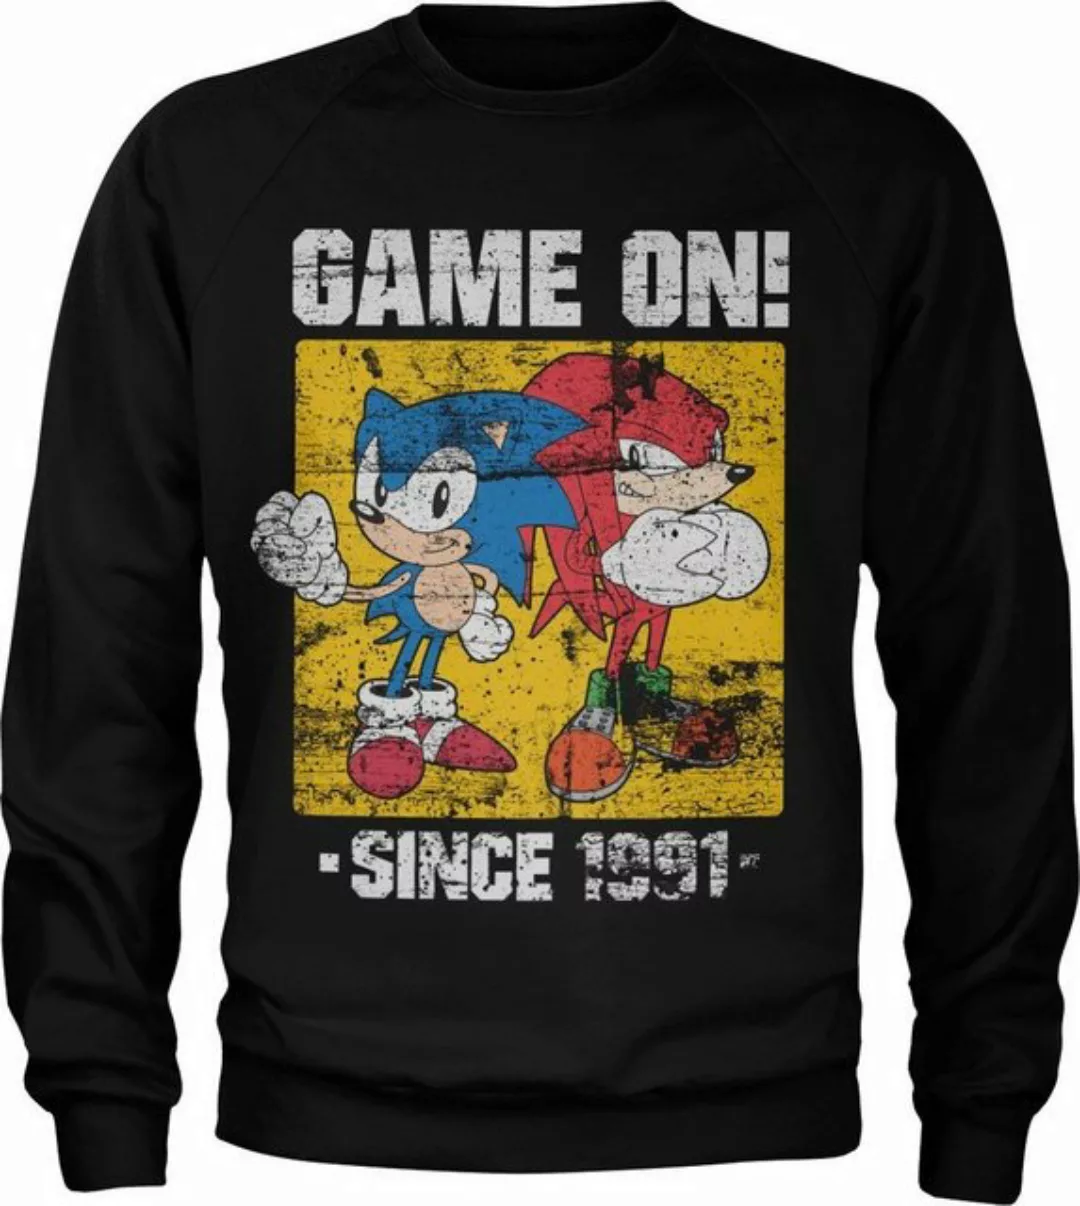 Sonic The Hedgehog Rundhalspullover günstig online kaufen